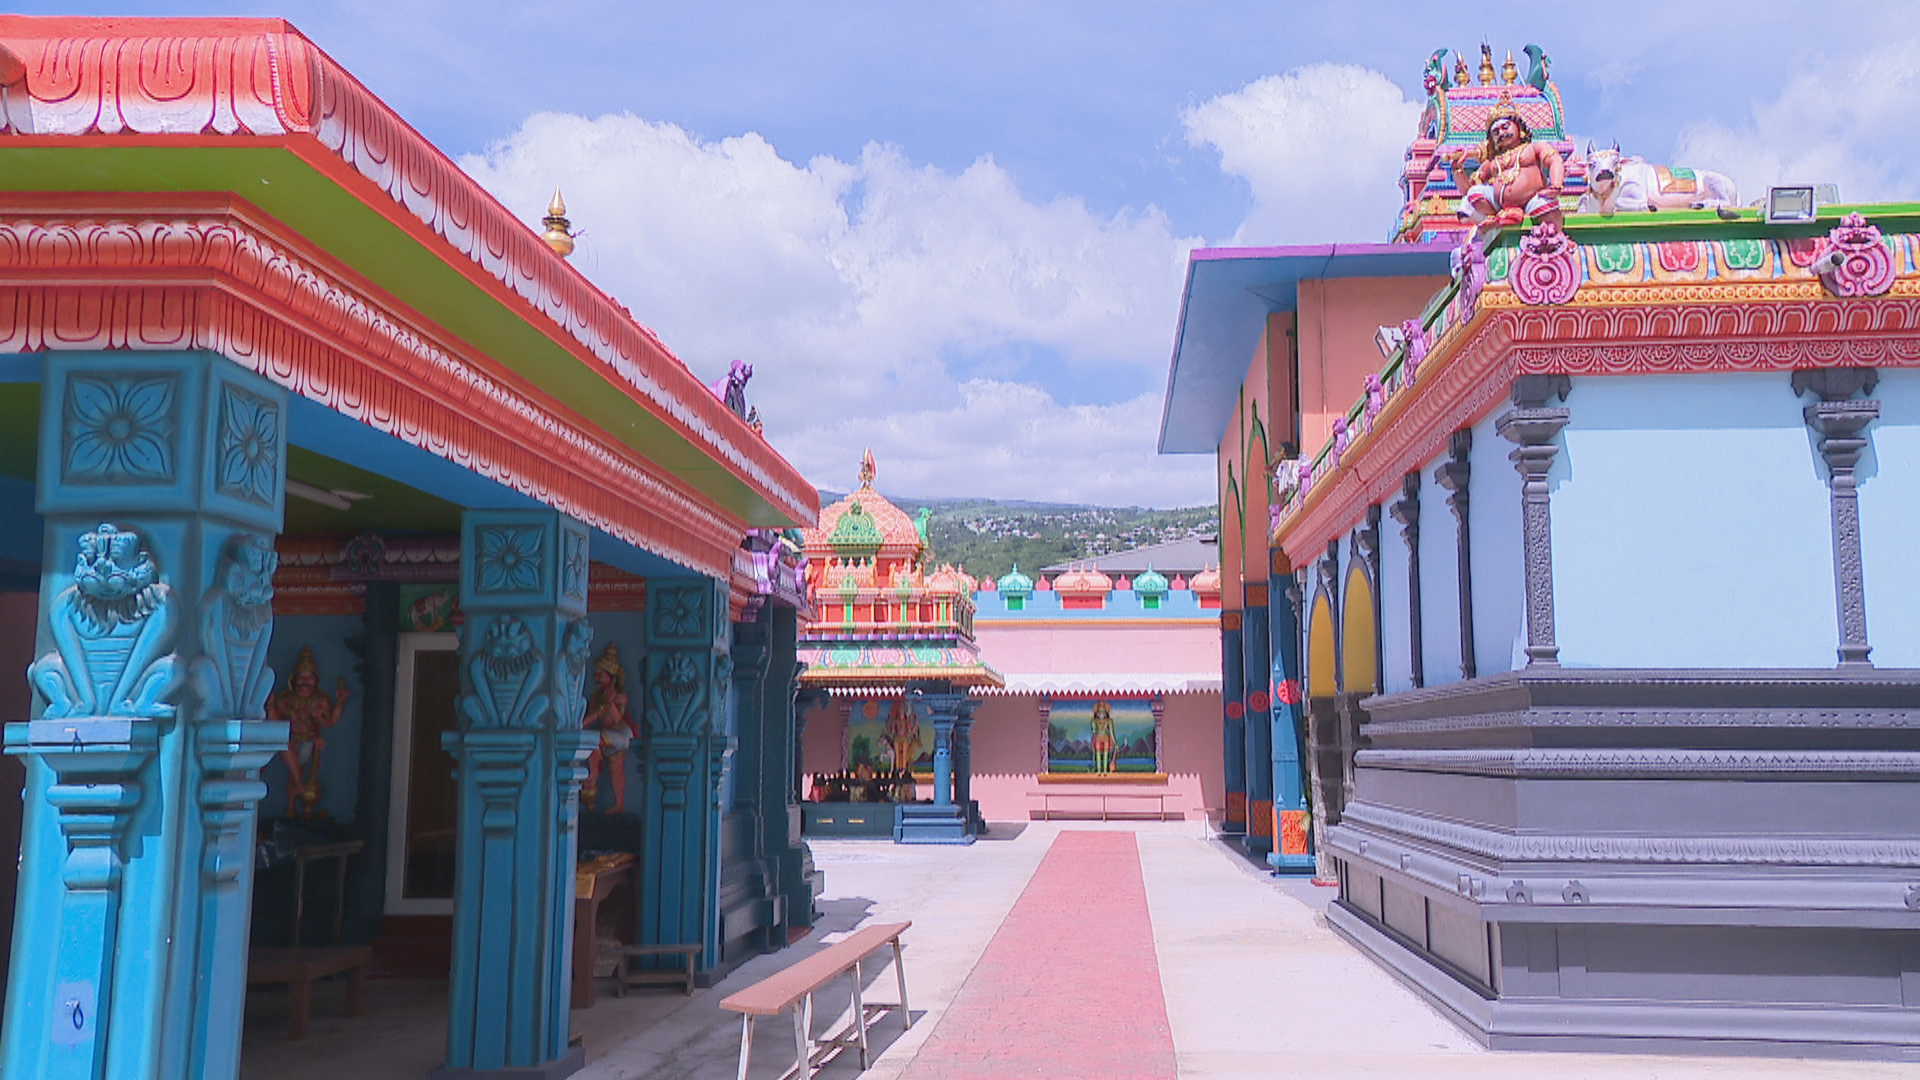 Pouttandou Vajtoukkel 5124 : « Bonne année 5124 » à la communauté indienne tamoule sur Réunion la 1ère !  Le temple de l’association Siva Vishnou Karly de Saint-Paul a été érigé il y a 135 ans. Il se compose de deux sanctuaires principaux qui abritent respectivement la demeure de SHRI MOUROUGA et l’autre celle de SHRI MARIAMMAN.  Dans ce lieu de culte hindou, on organise chaque année deux importantes tavam ou pénitences à savoir le Kâvadi en l’honneur de SHRI MOUROUGA et une timidi ou marche sur le feu en l’honneur de SHRI MARIAMMAN. L’association SIVA VISHNOU KARLY, créée en 1959, gère ce temple sis à la Place du Gôpouram au N°99 de la rue Saint-Louis à Saint Paul et elle est actuellement présidée par M. Serge Ajaguin Soleyen Coujendevel.                                   Vendredi 14 avril prochain, les Tamouls entrent dans l’année SOBHAGROUDA 5124 qui sera célébrée dans toute l’île et notamment dans ce kôvil ou temple. La cérémonie se tiendra pour honorer la Nature, les Astres, les Divinités tutélaires afin de placer cette nouvelle année sous les meilleurs auspices.  Les offices religieux sont placés sous la direction de Swaminatha Harihara Sivarcharya, accompagné par les musiciens de Nadhaswaram et de Tavil 